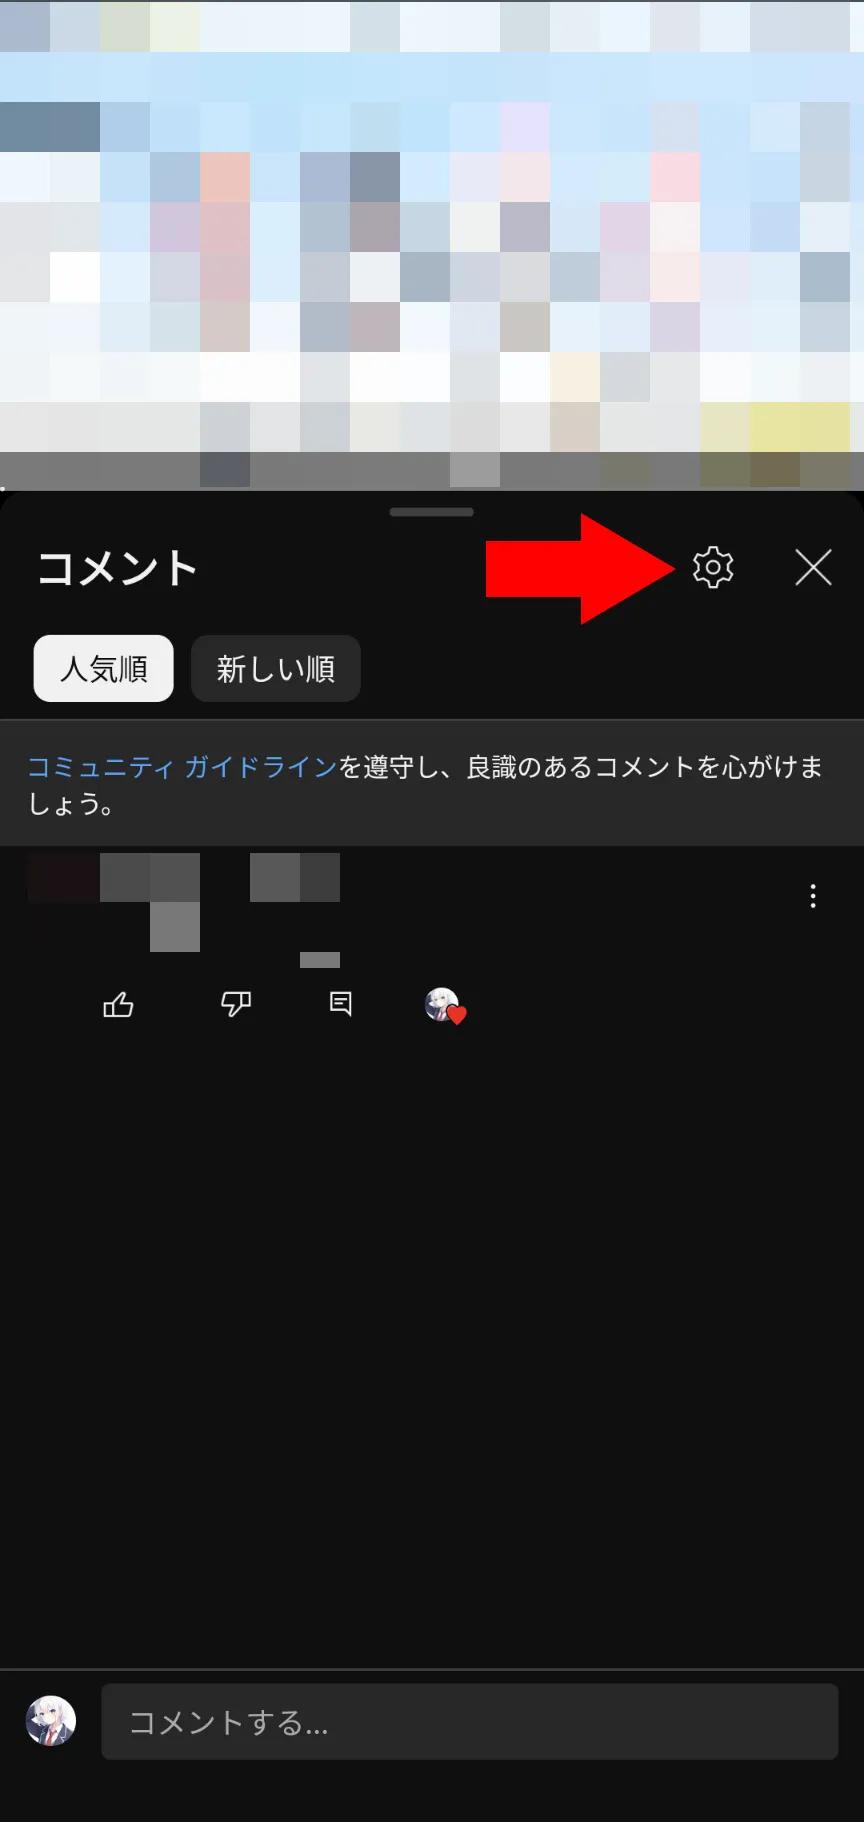 YouTubeアプリのコメント欄のスクリーンショット。コメント欄の右上に歯車アイコンが表示されている